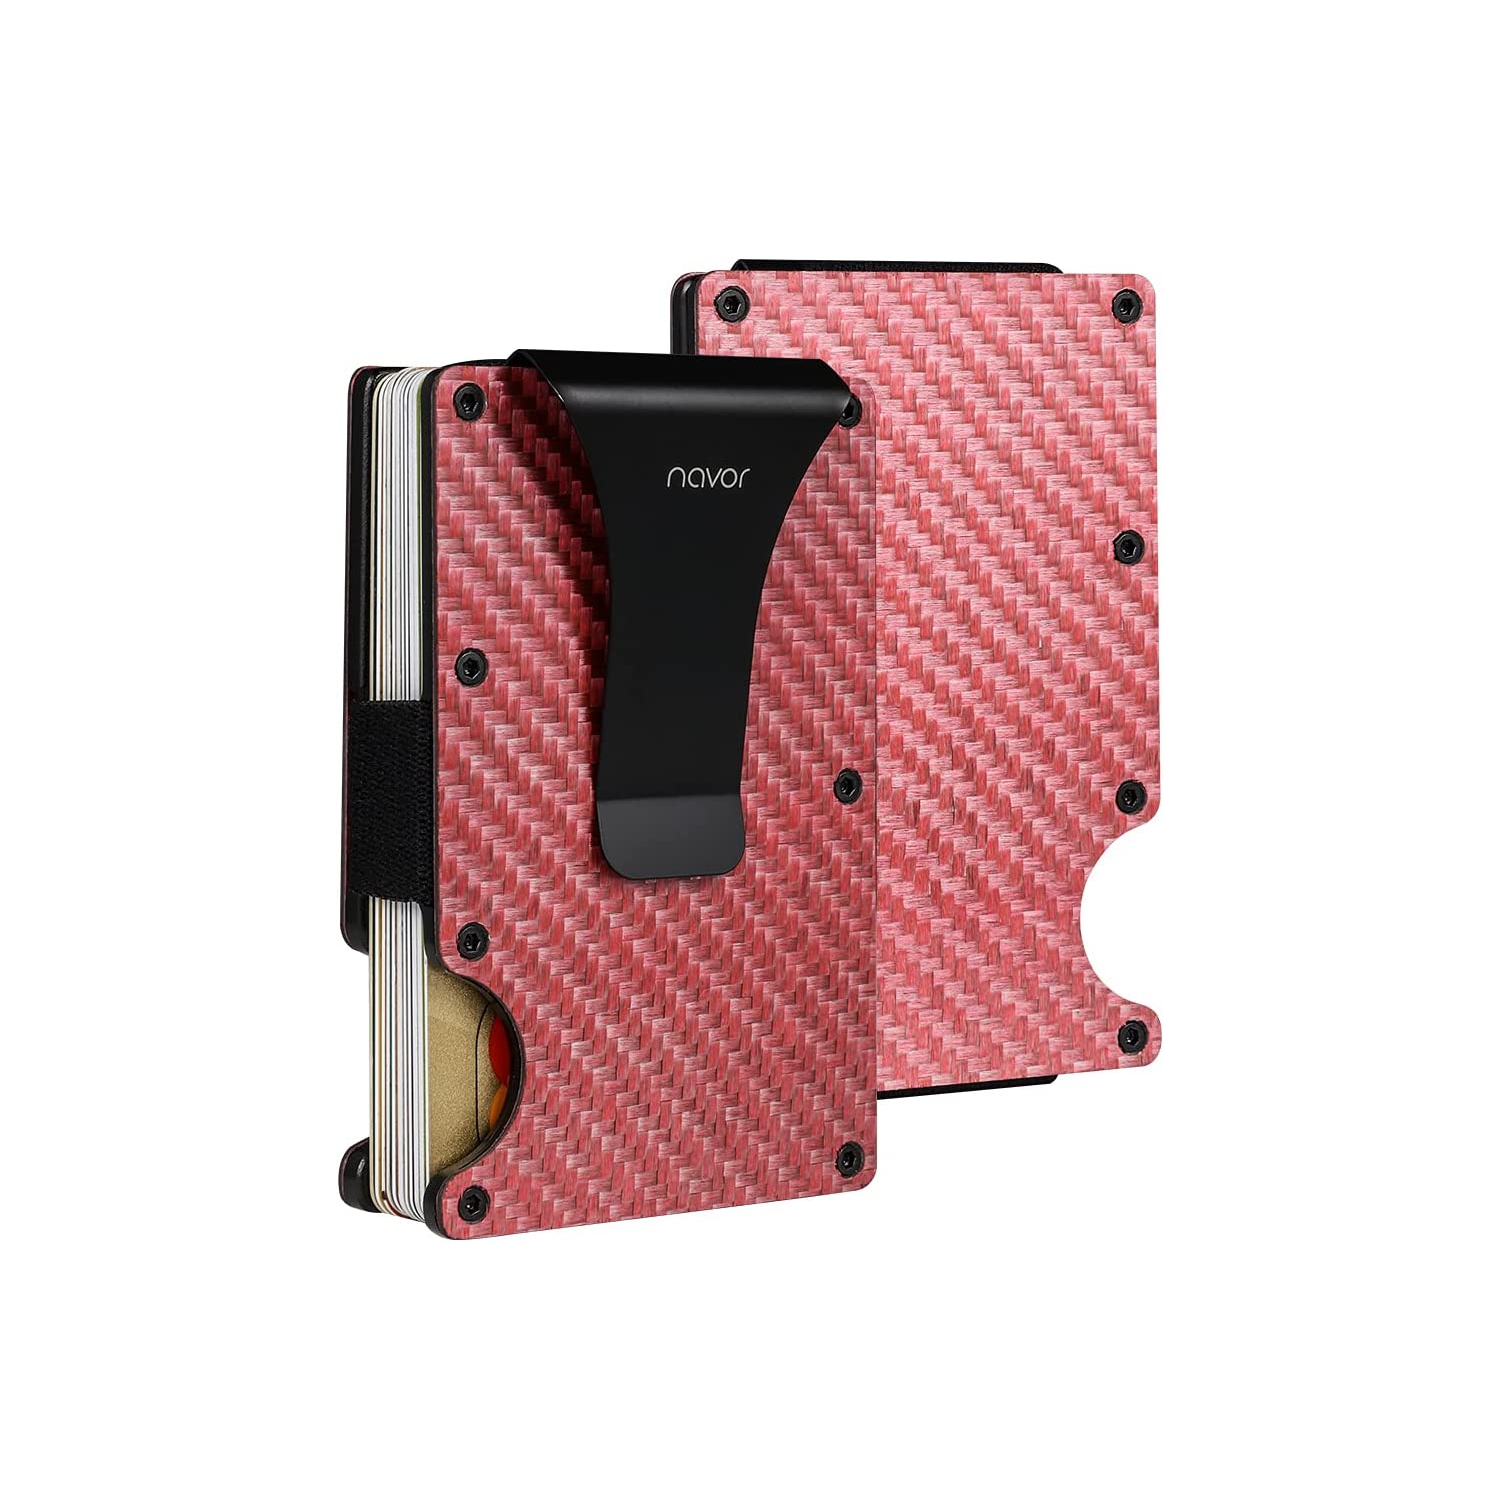 navor Minimalist Carbon Fiber Wallet in Rose Gold - Front Pocket RFID Blocking Minimalist Wallet for Men & Women - Metal Wallet Credit Card Holder with Money Clip - Secured & Slim